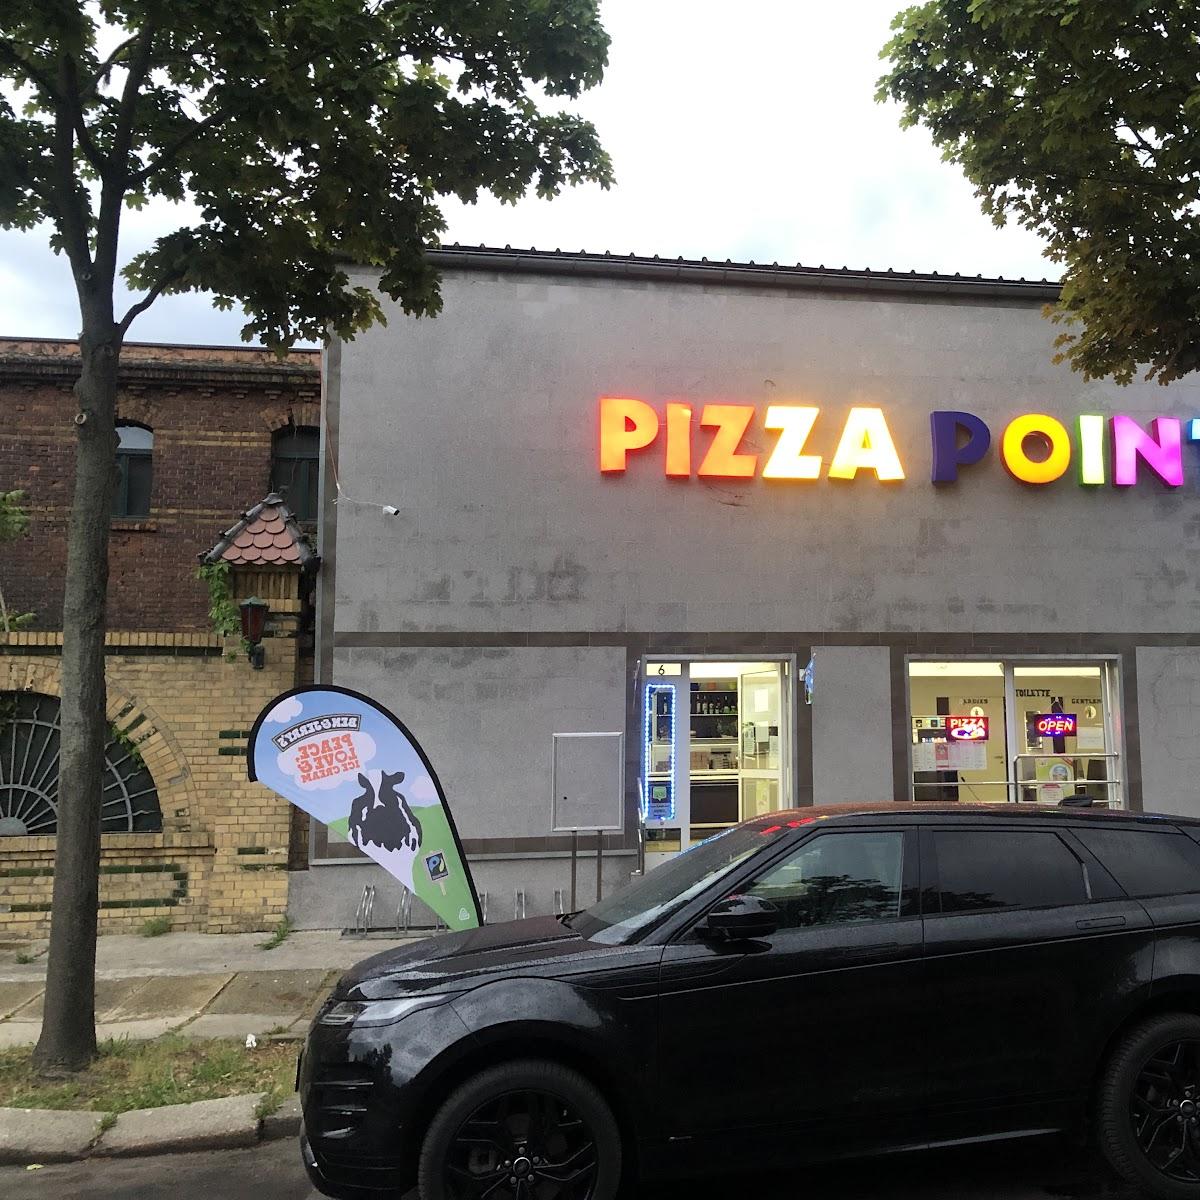 Restaurant "Pizza Point" in Leipzig